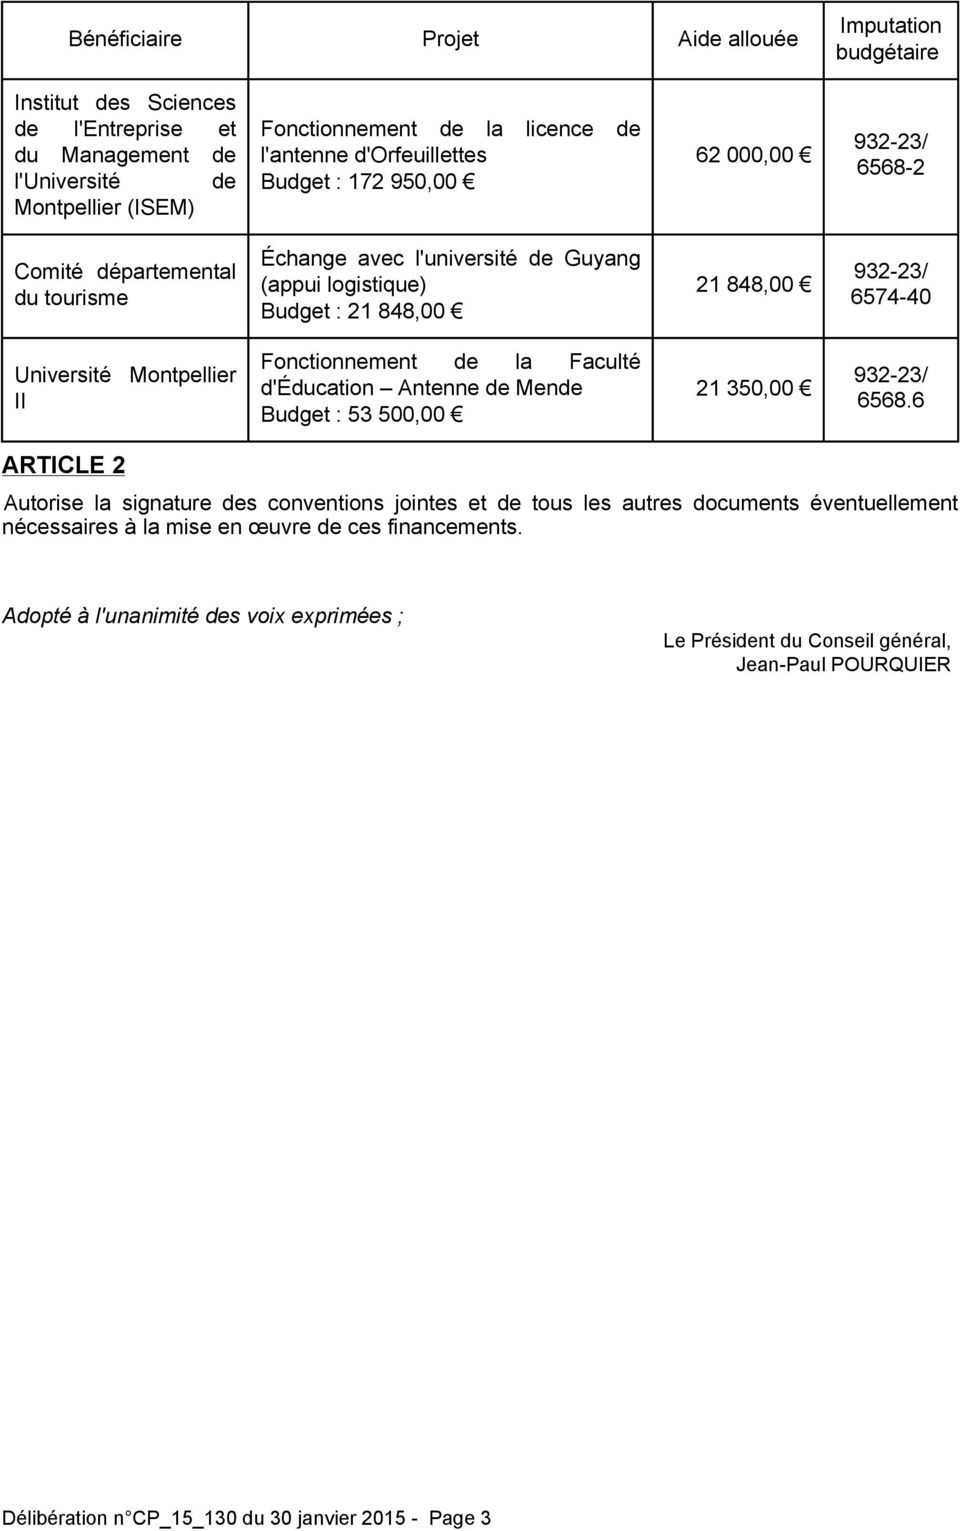 Université Montpellier II Fonctionnement de la Faculté d'éducation Antenne de Mende Budget : 53 500,00 21 350,00 932-23/ 6568.